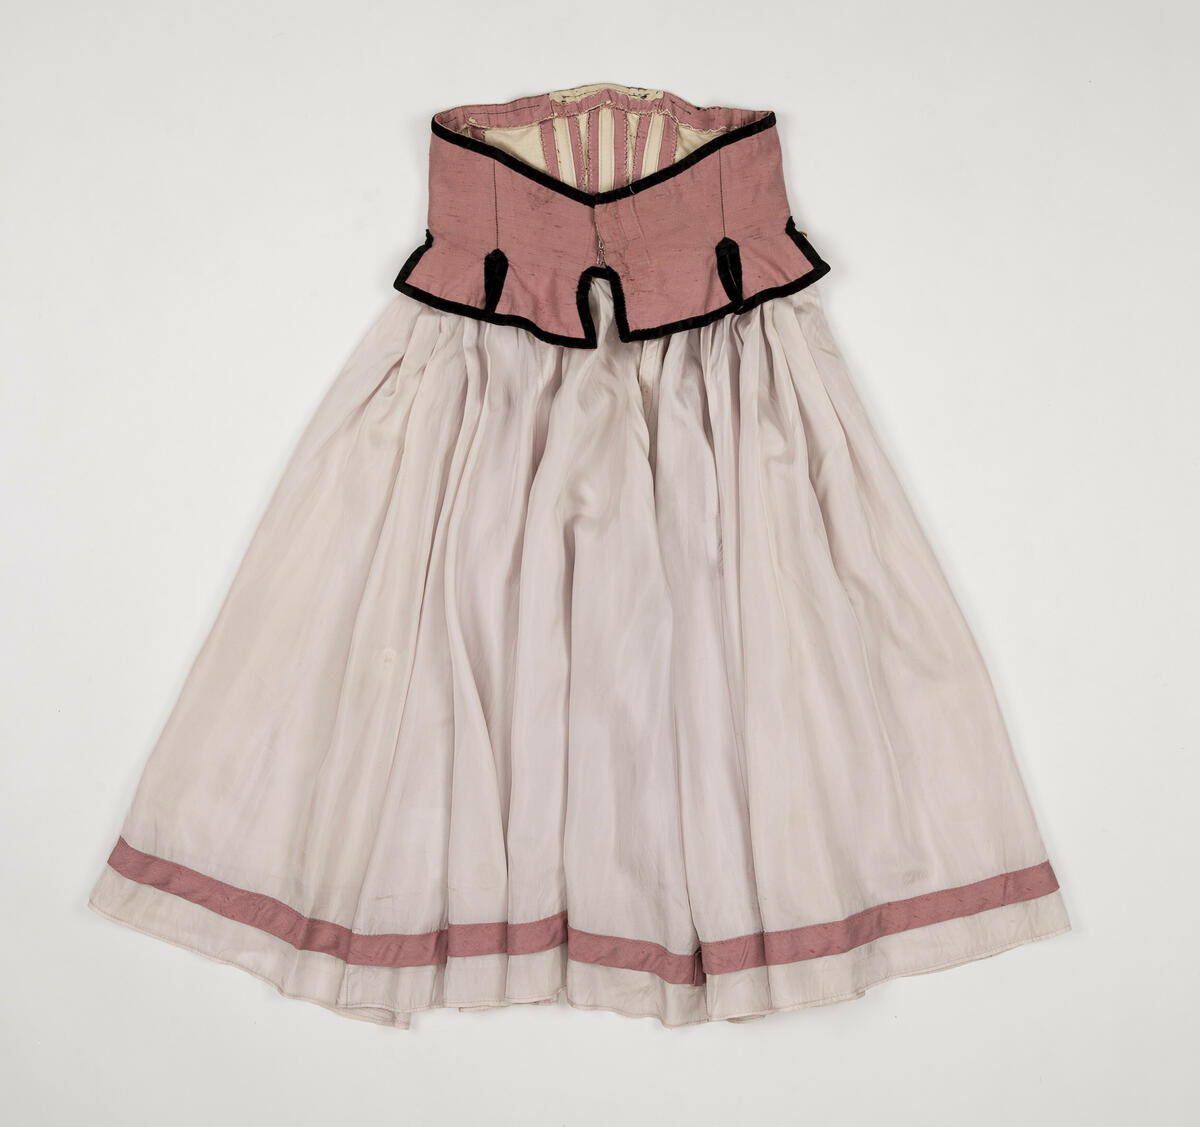 Kjol använd för rollen "Värdshusflicka" (en av flera)  i uppsättningen ”Pierrot i parken”.
Kjolen är tvådelad, dvs. kjolen består av ett korsettliv och en kjol som sytts ihop.